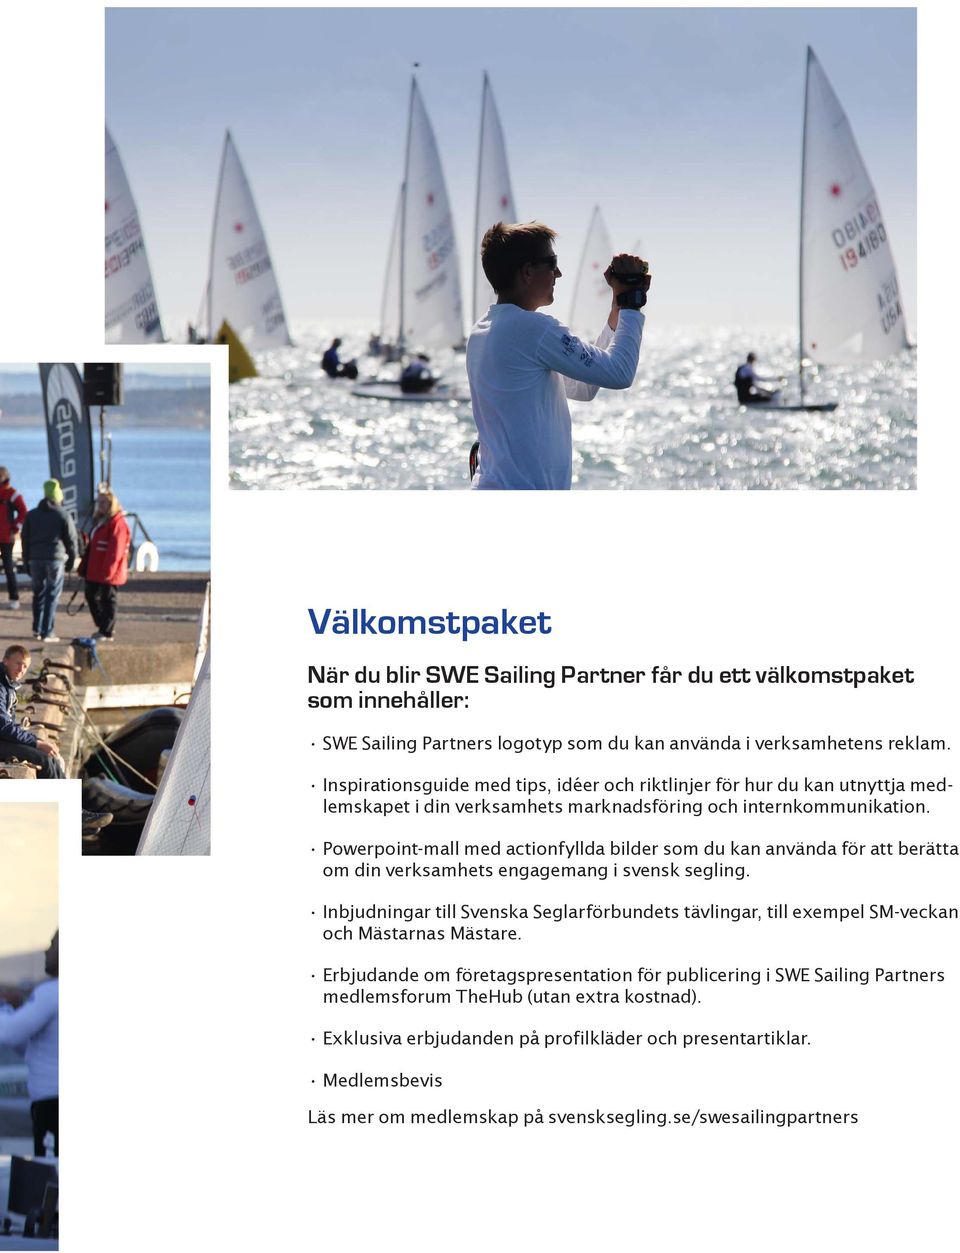 Powerpoint-mall med actionfyllda bilder som du kan använda för att berätta om din verksamhets engagemang i svensk segling.